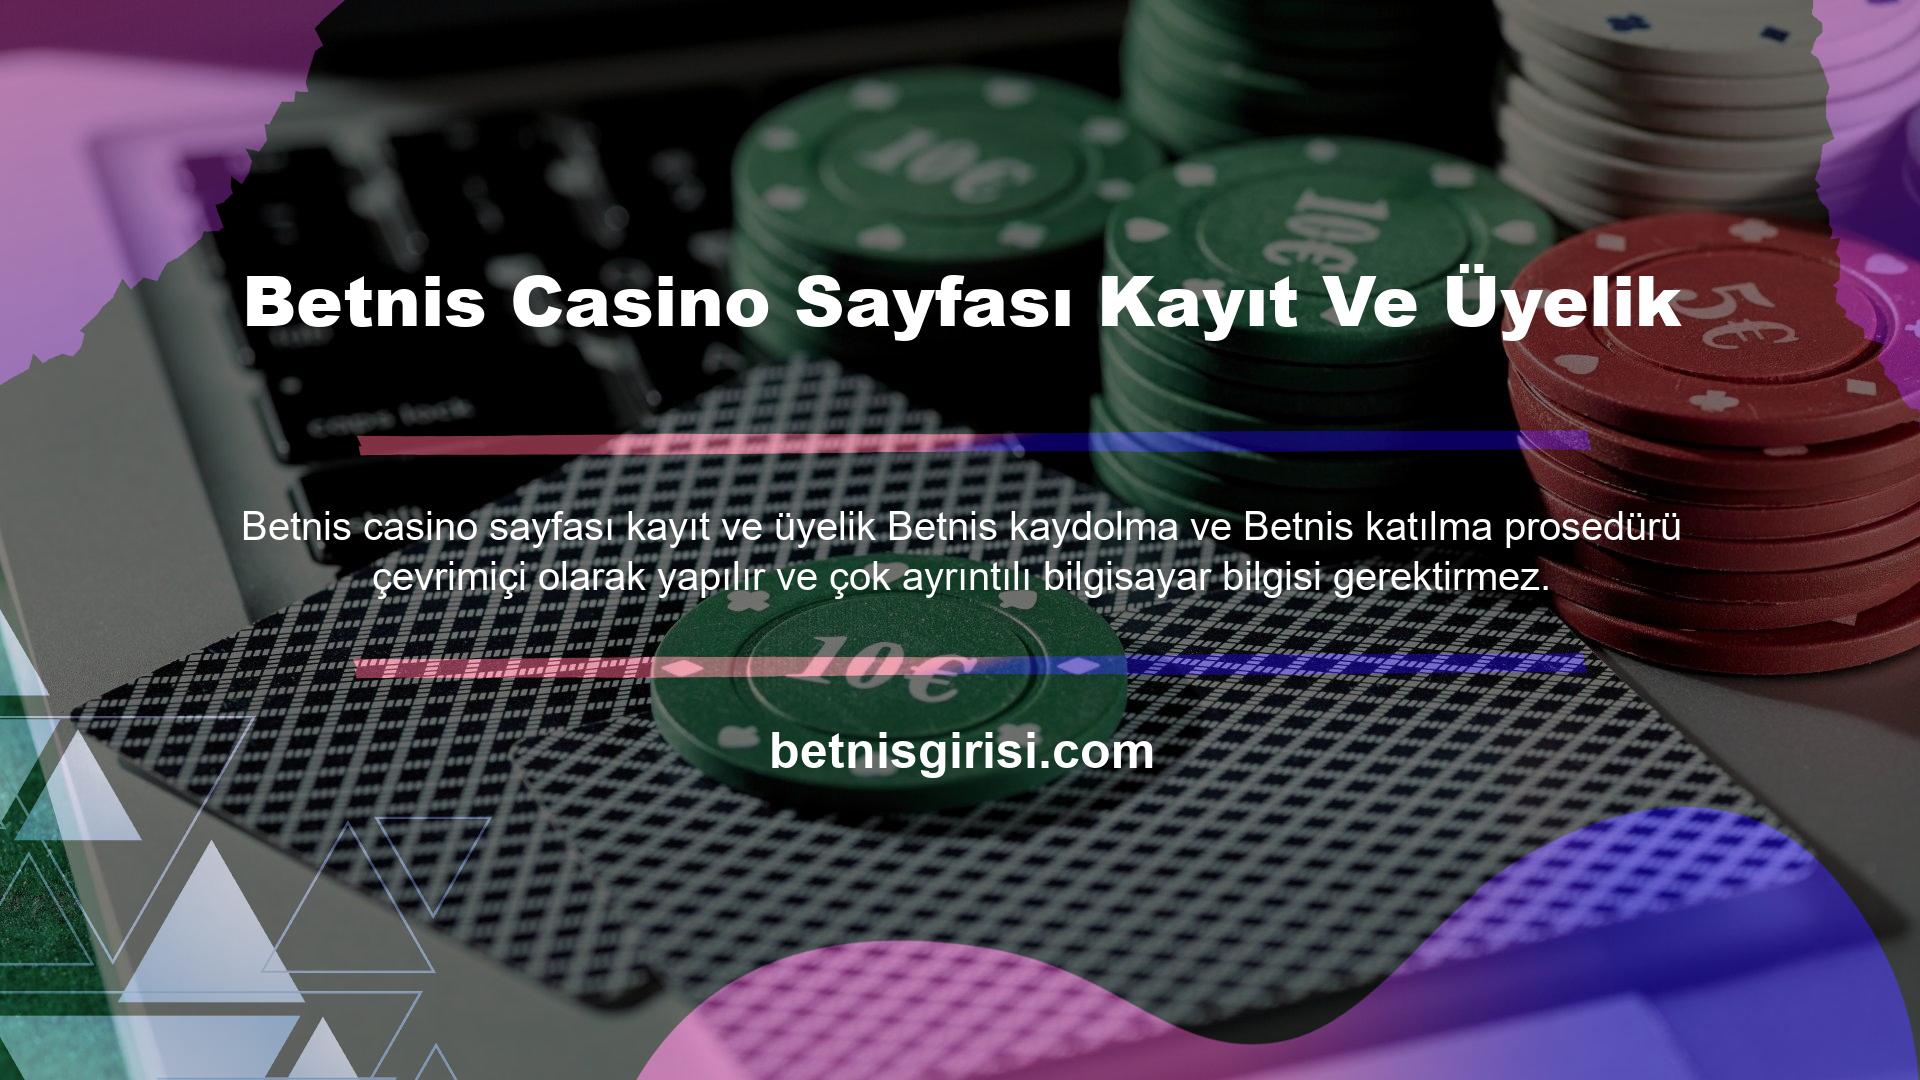 Betnis casino sayfası kayıt ve üyelik